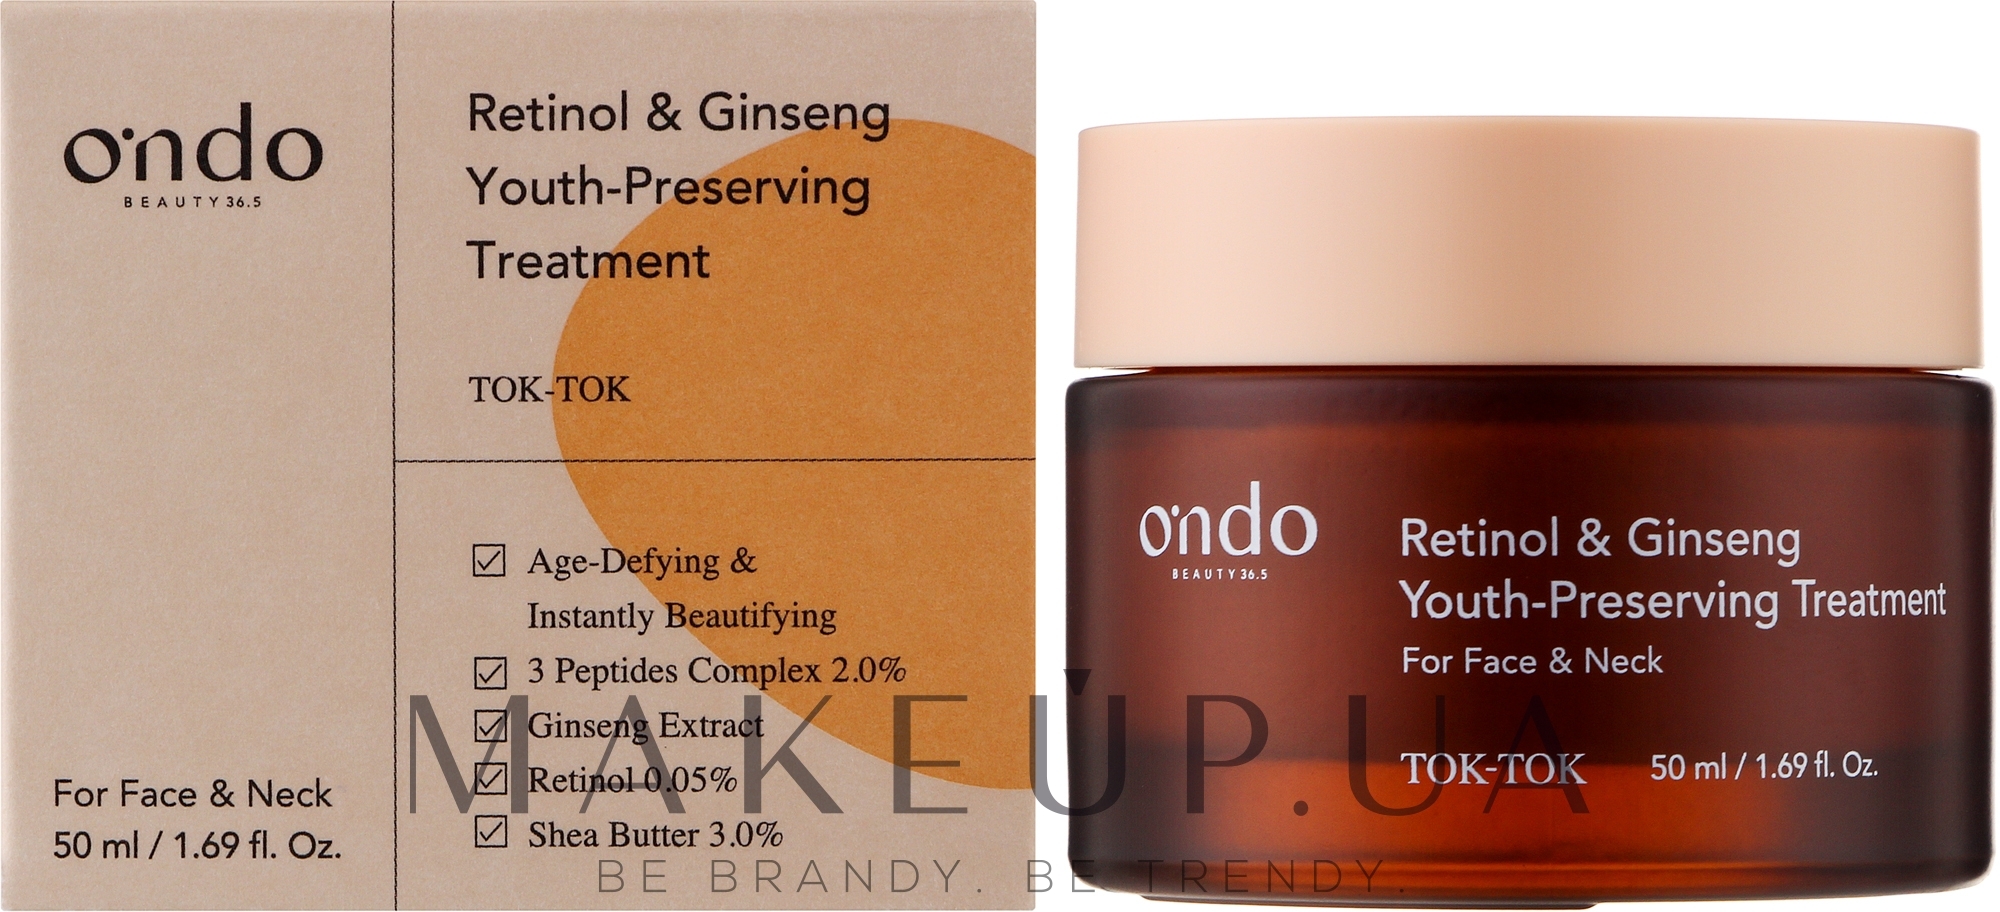 Подтягивающий крем для шеи и зоны декольте - Ondo Beauty 36.5 Peptides & Ginseng Neck Treatment — фото 50ml